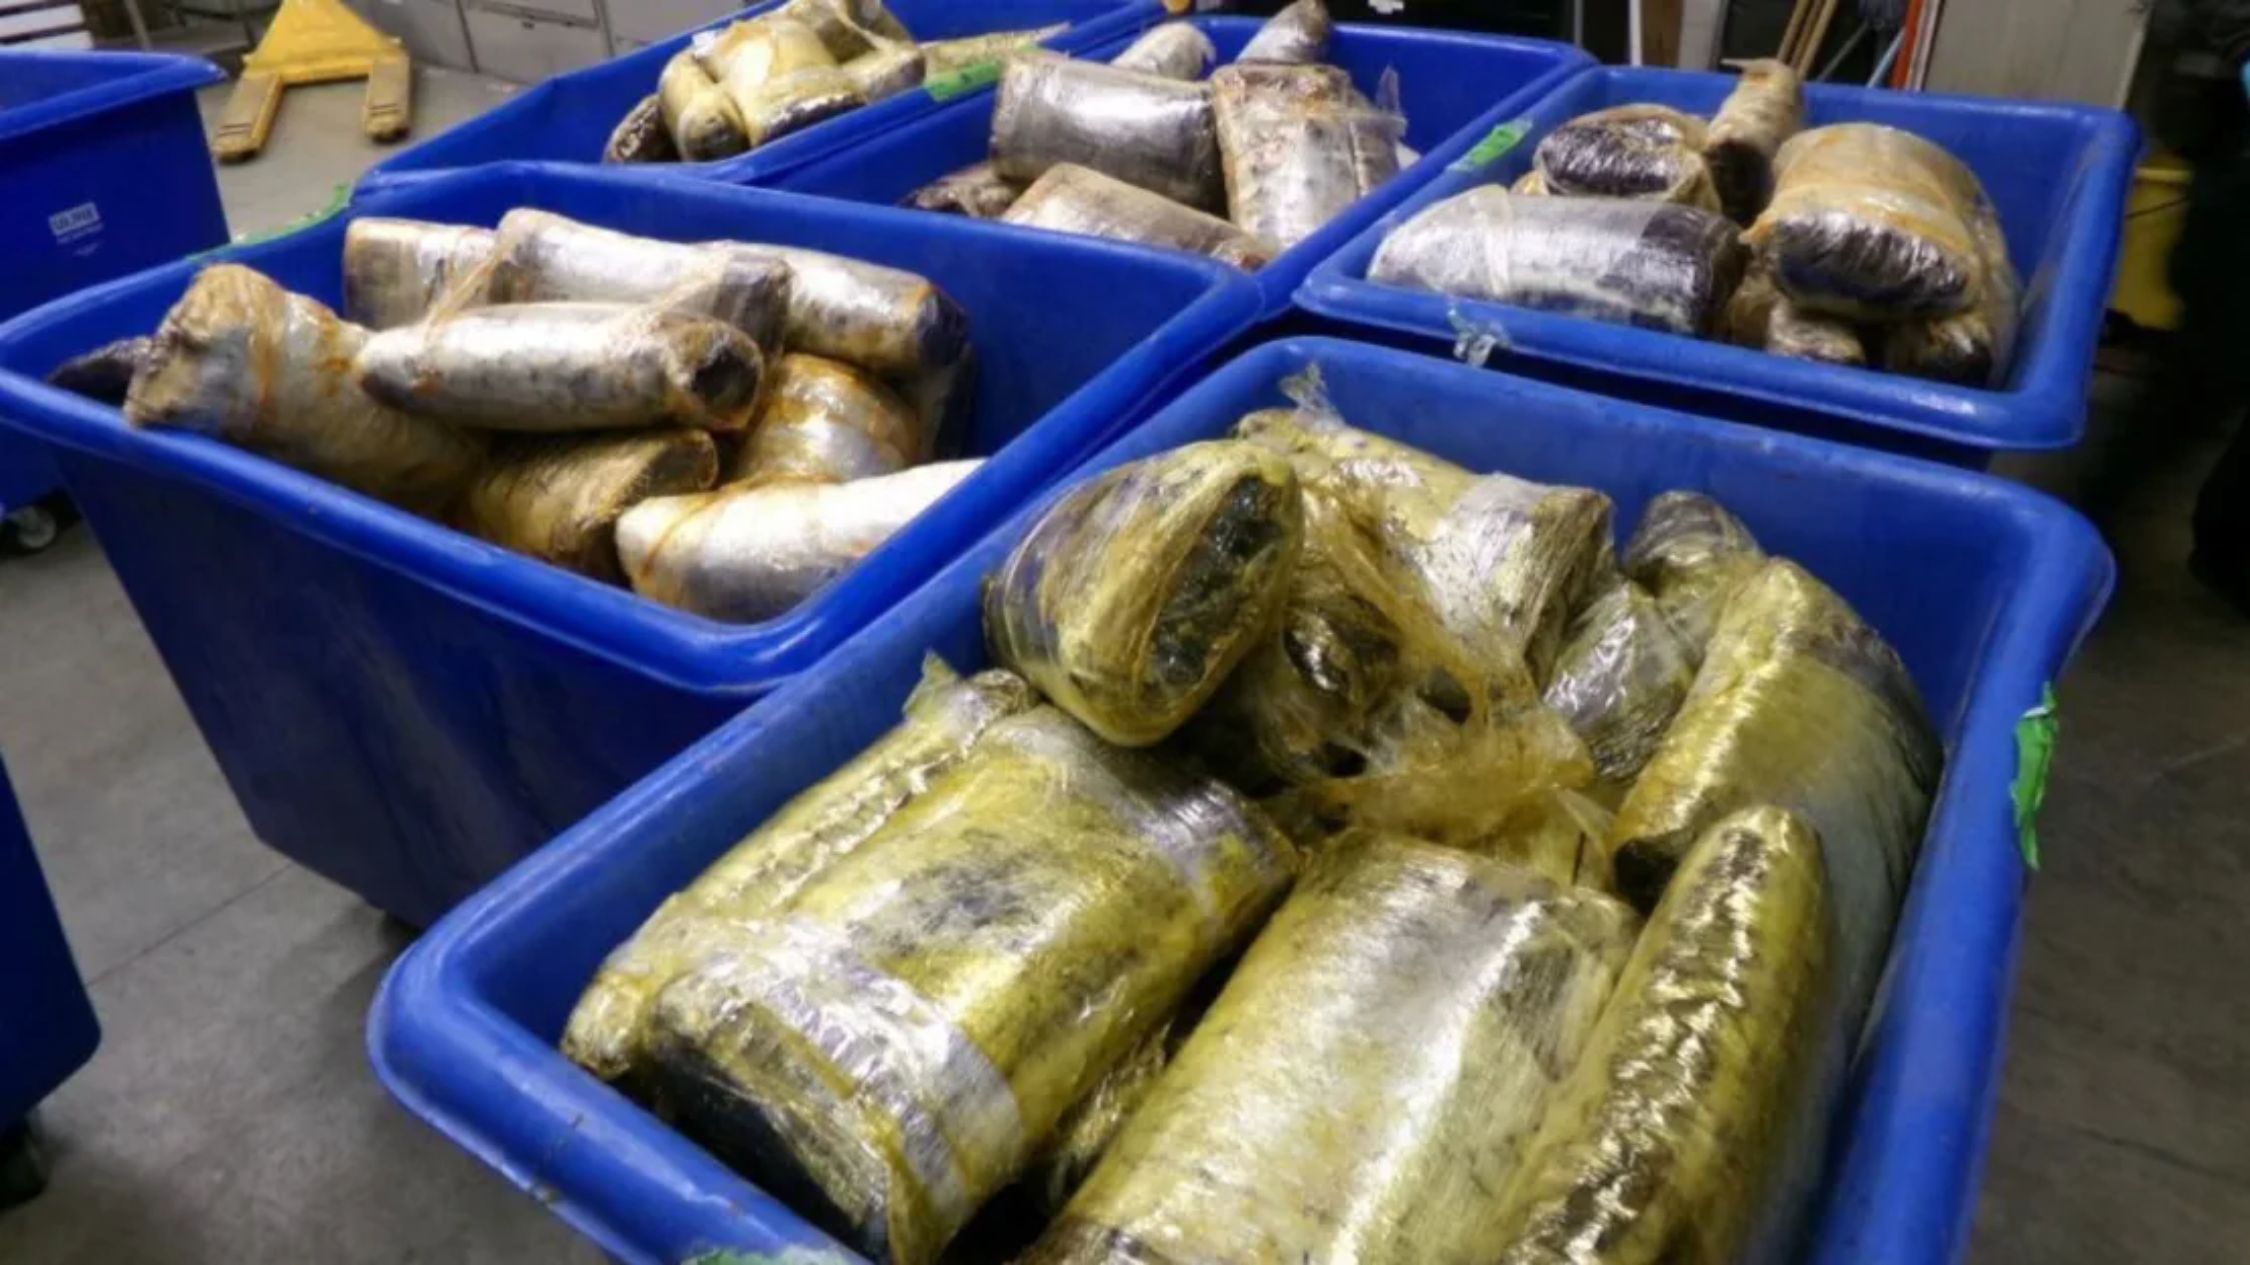 El cargamento incautado de metanfetamina y cocaína pesaba más de 1670 kilos, según la CBP. (Crédito: Oficina de Aduanas y Protección Fronteriza de EE.UU.)